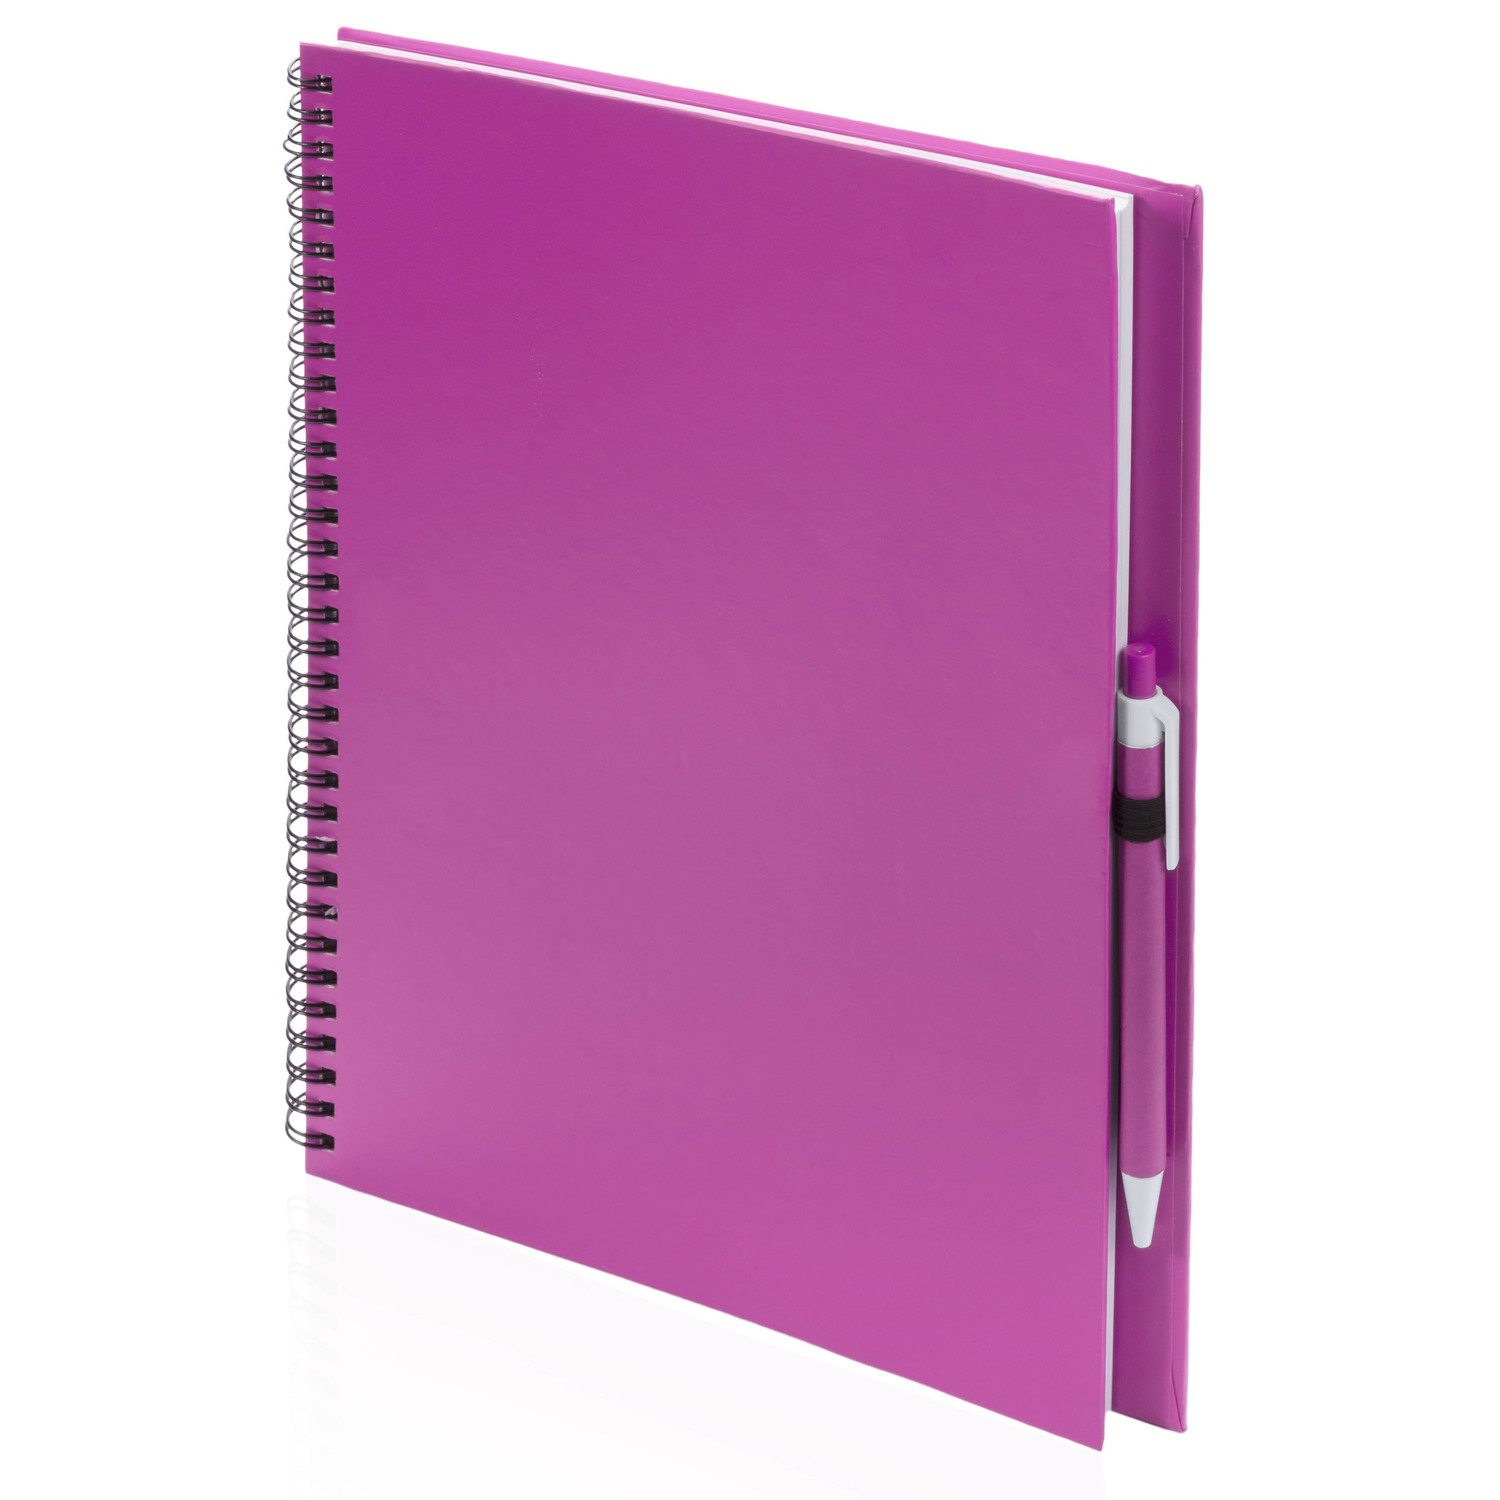 Schetsboek-tekenboek roze A4 formaat 80 vellen inclusief pen